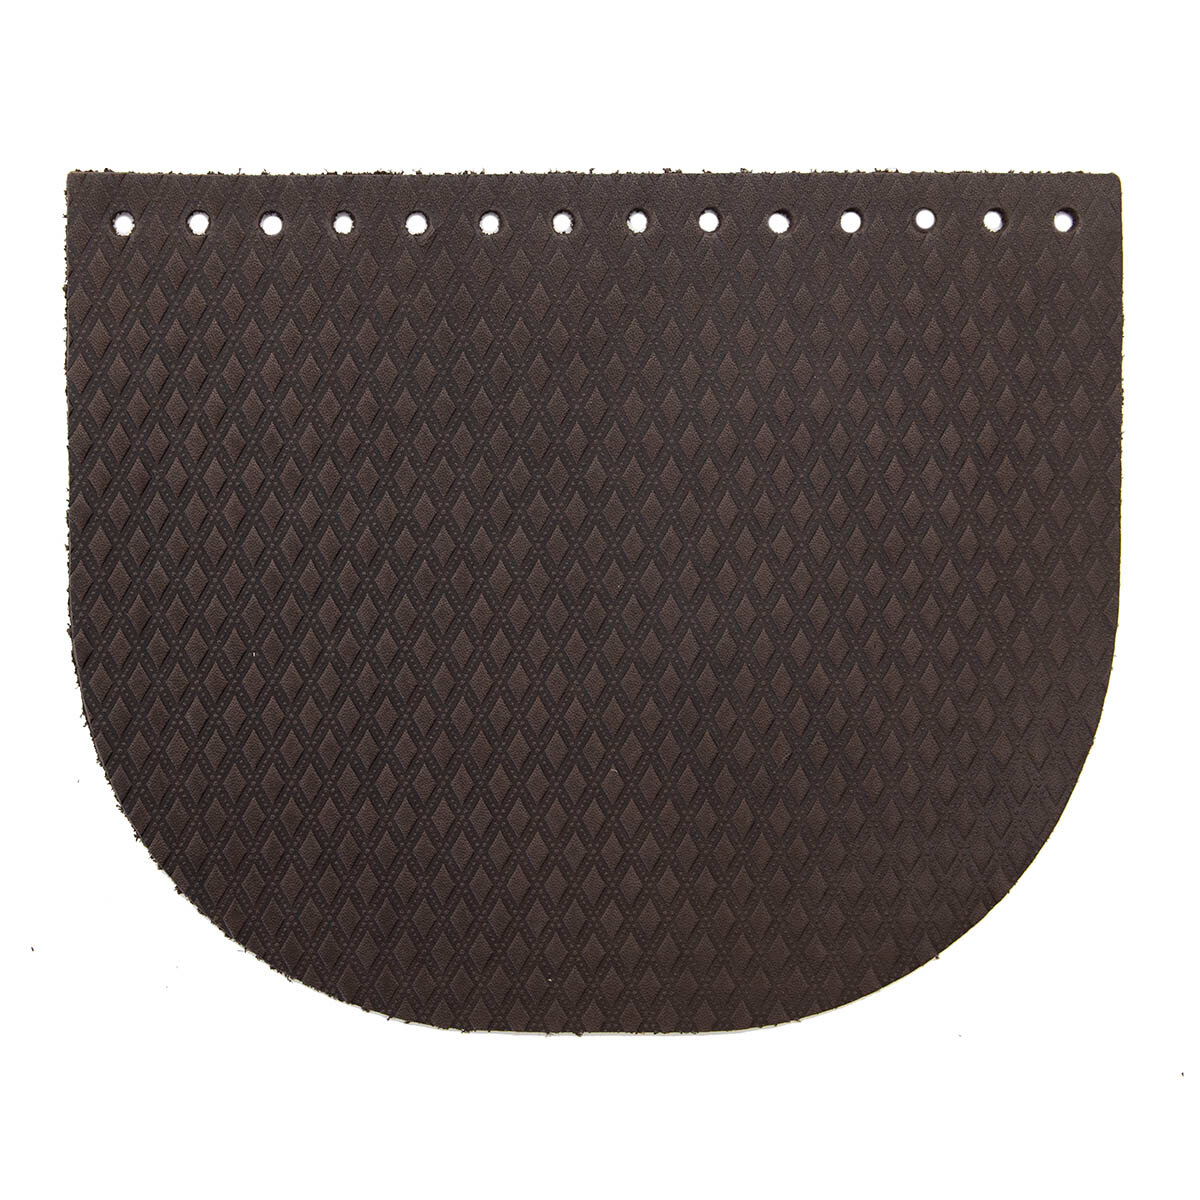 Крышечка для сумки Ромбик маленький, 20,4см*17,2см, дизайн №2011, 100% кожа (темно-коричневый)